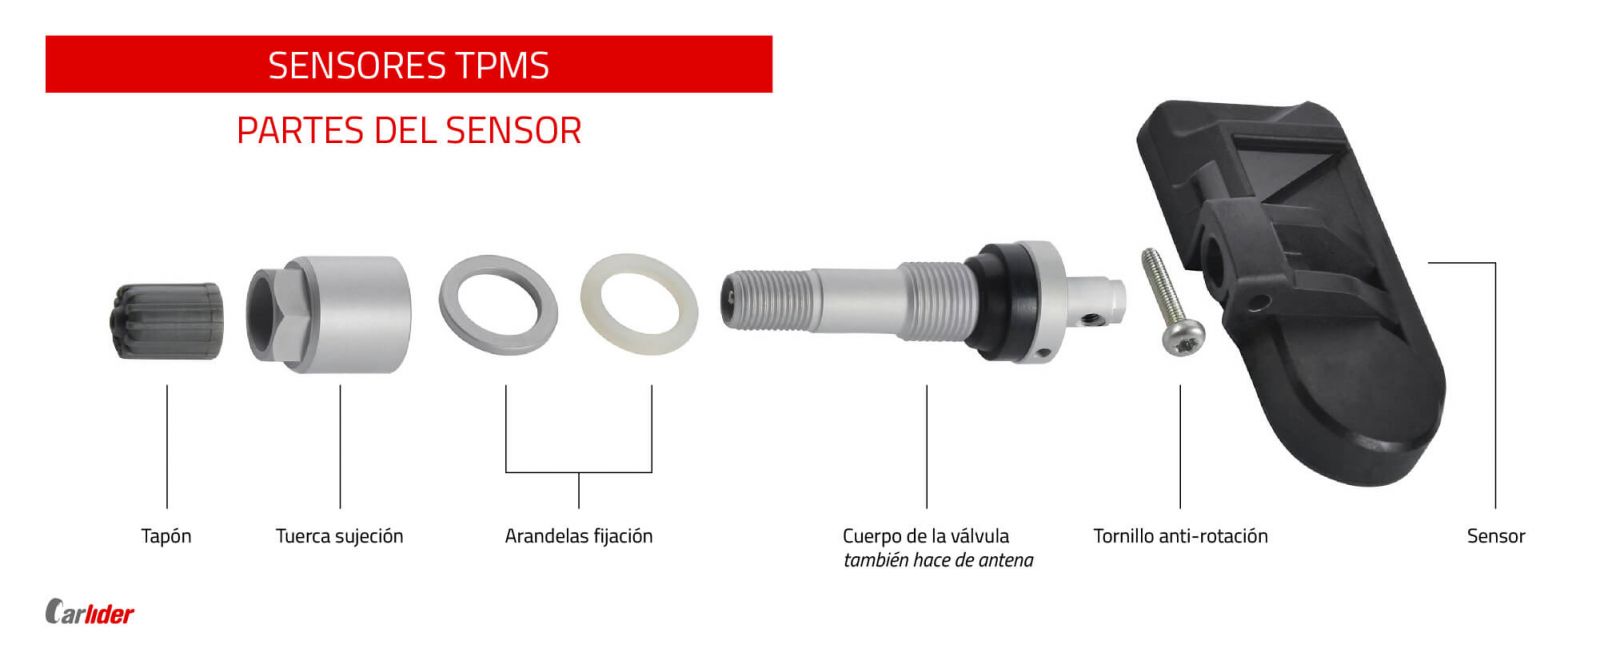 Sensores TPMS, ¿Qué son?